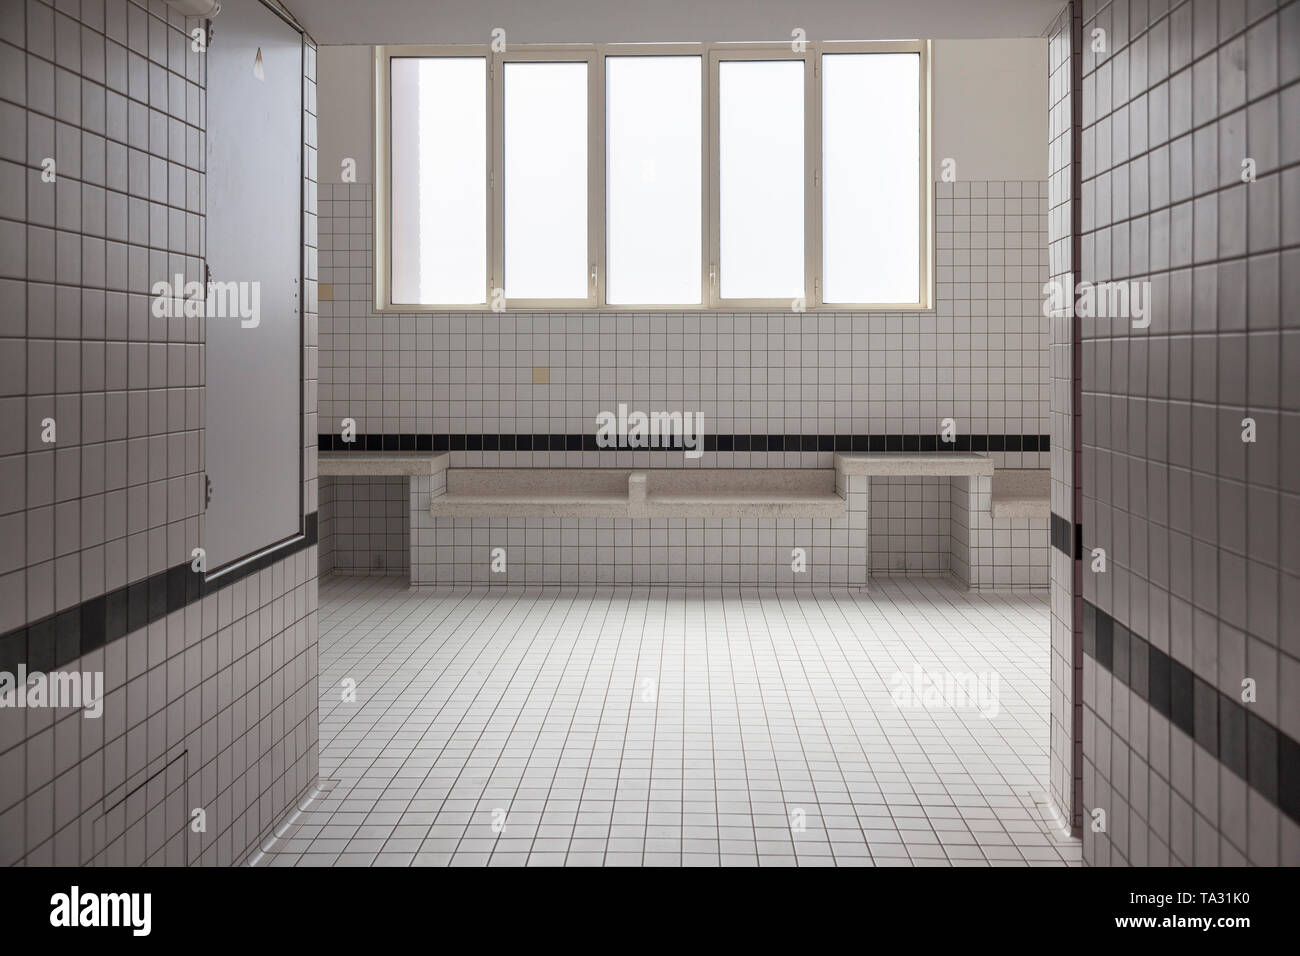 Vestuarios con duchas públicas baldosas blancas paredes y ventanas  Fotografía de stock - Alamy